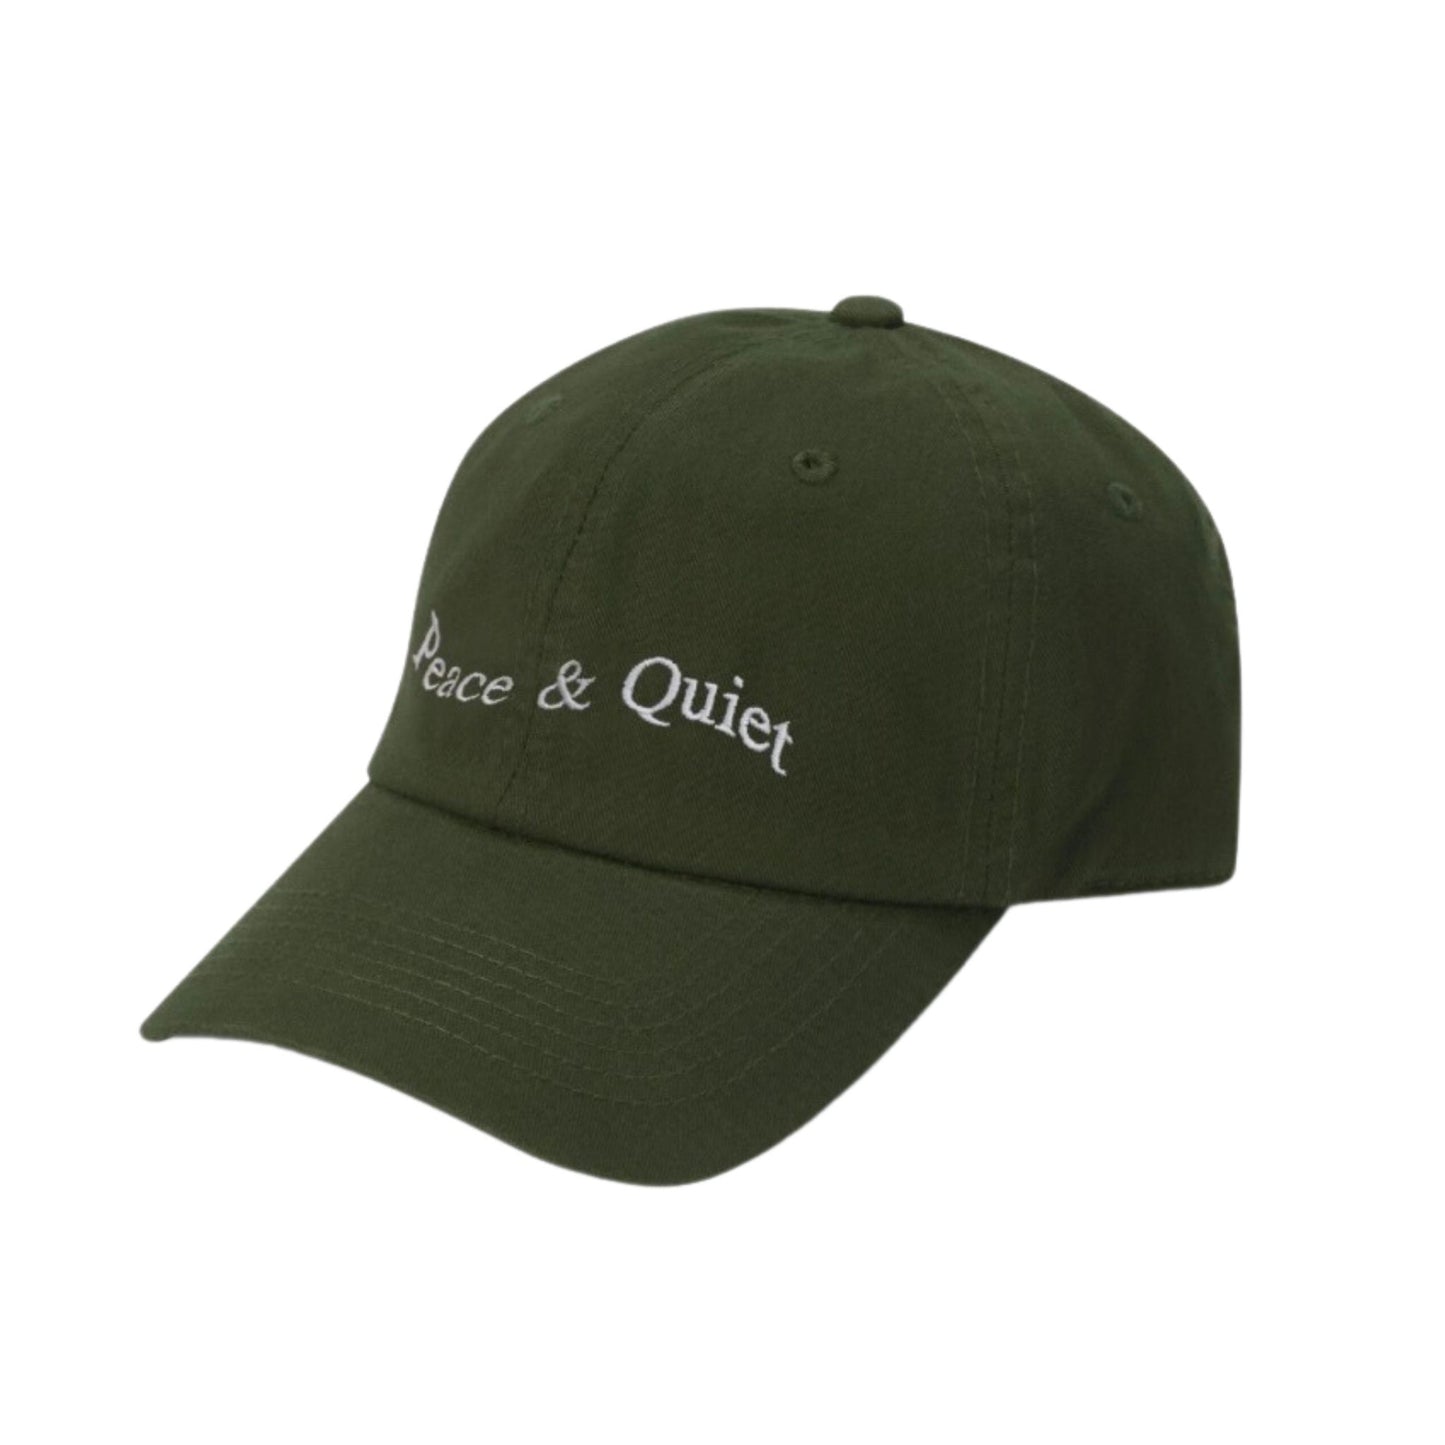 MUSEUM OF PEACE & QUIET - Wordmark Hat